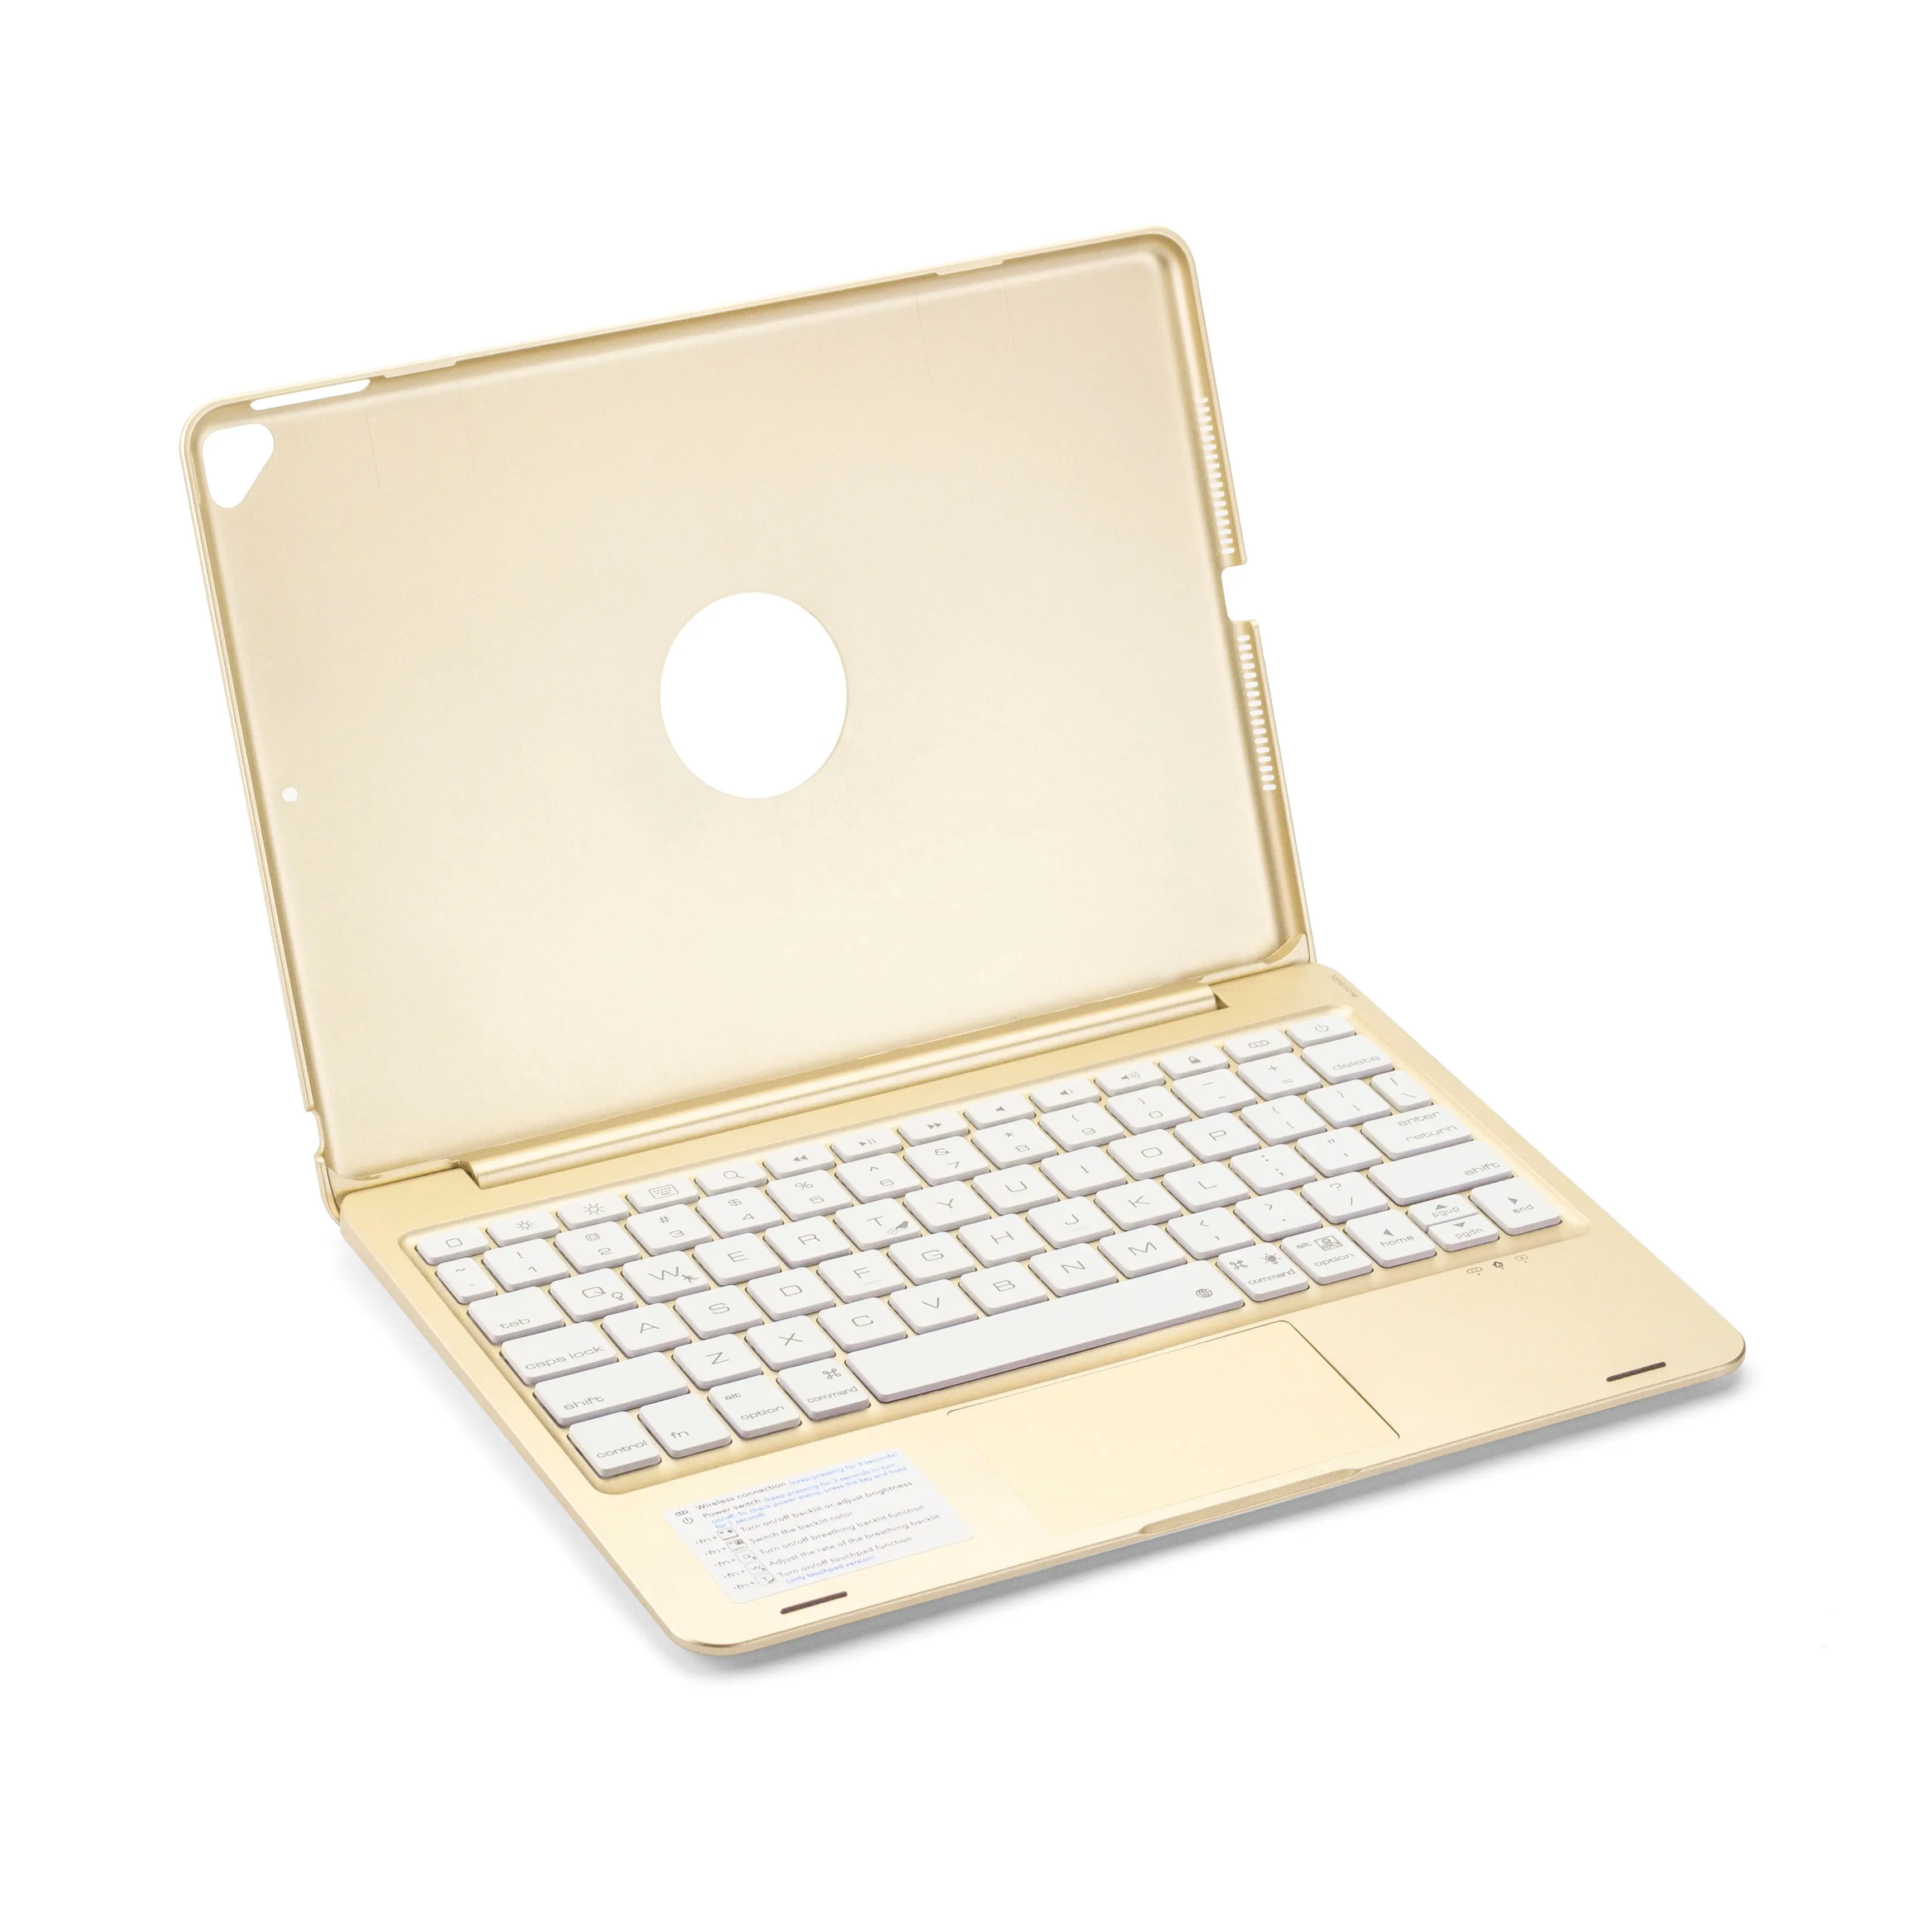 आईपैड प्रो 2 आईपैड एयर 3 के लिए उच्च गुणवत्ता वाला एबीएस 10.2 10.5 इंच ट्रैकपैड बैकलिट कीबोर्ड केस